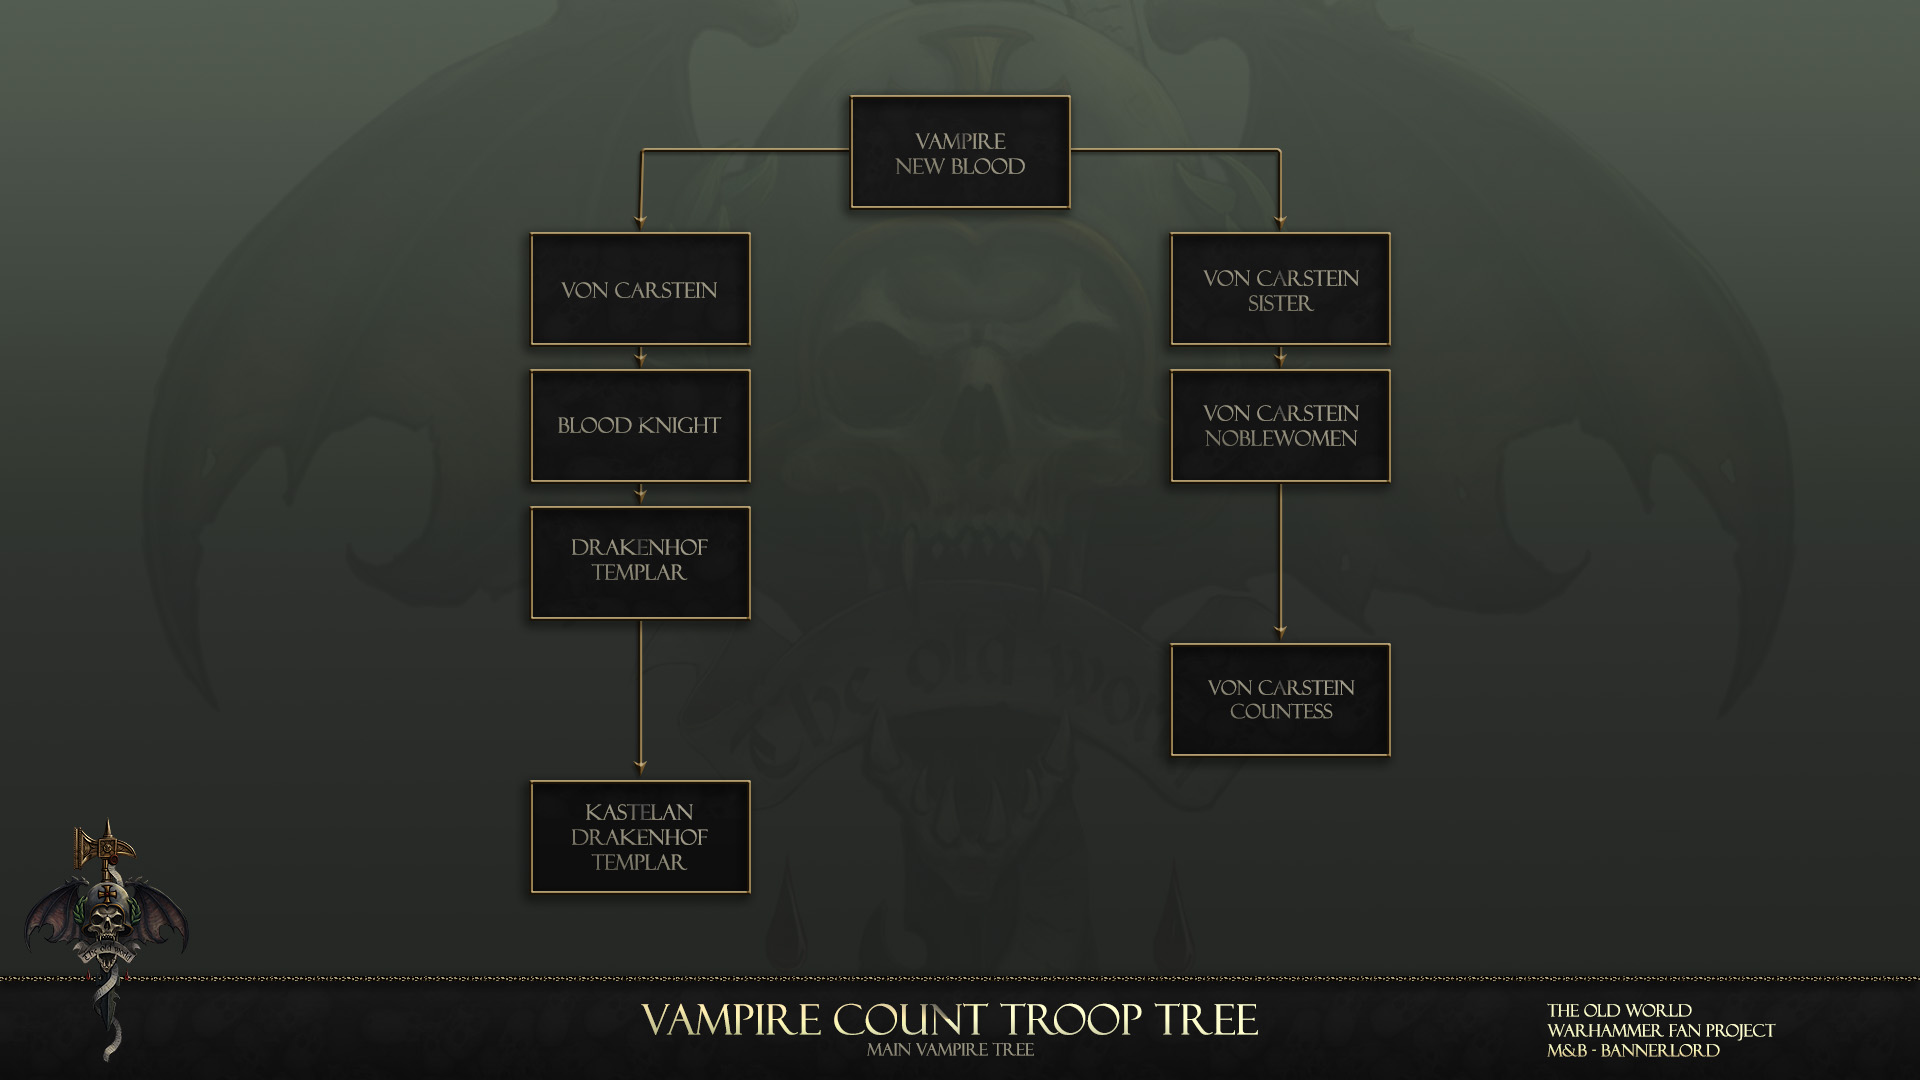 Main Vampire Tree